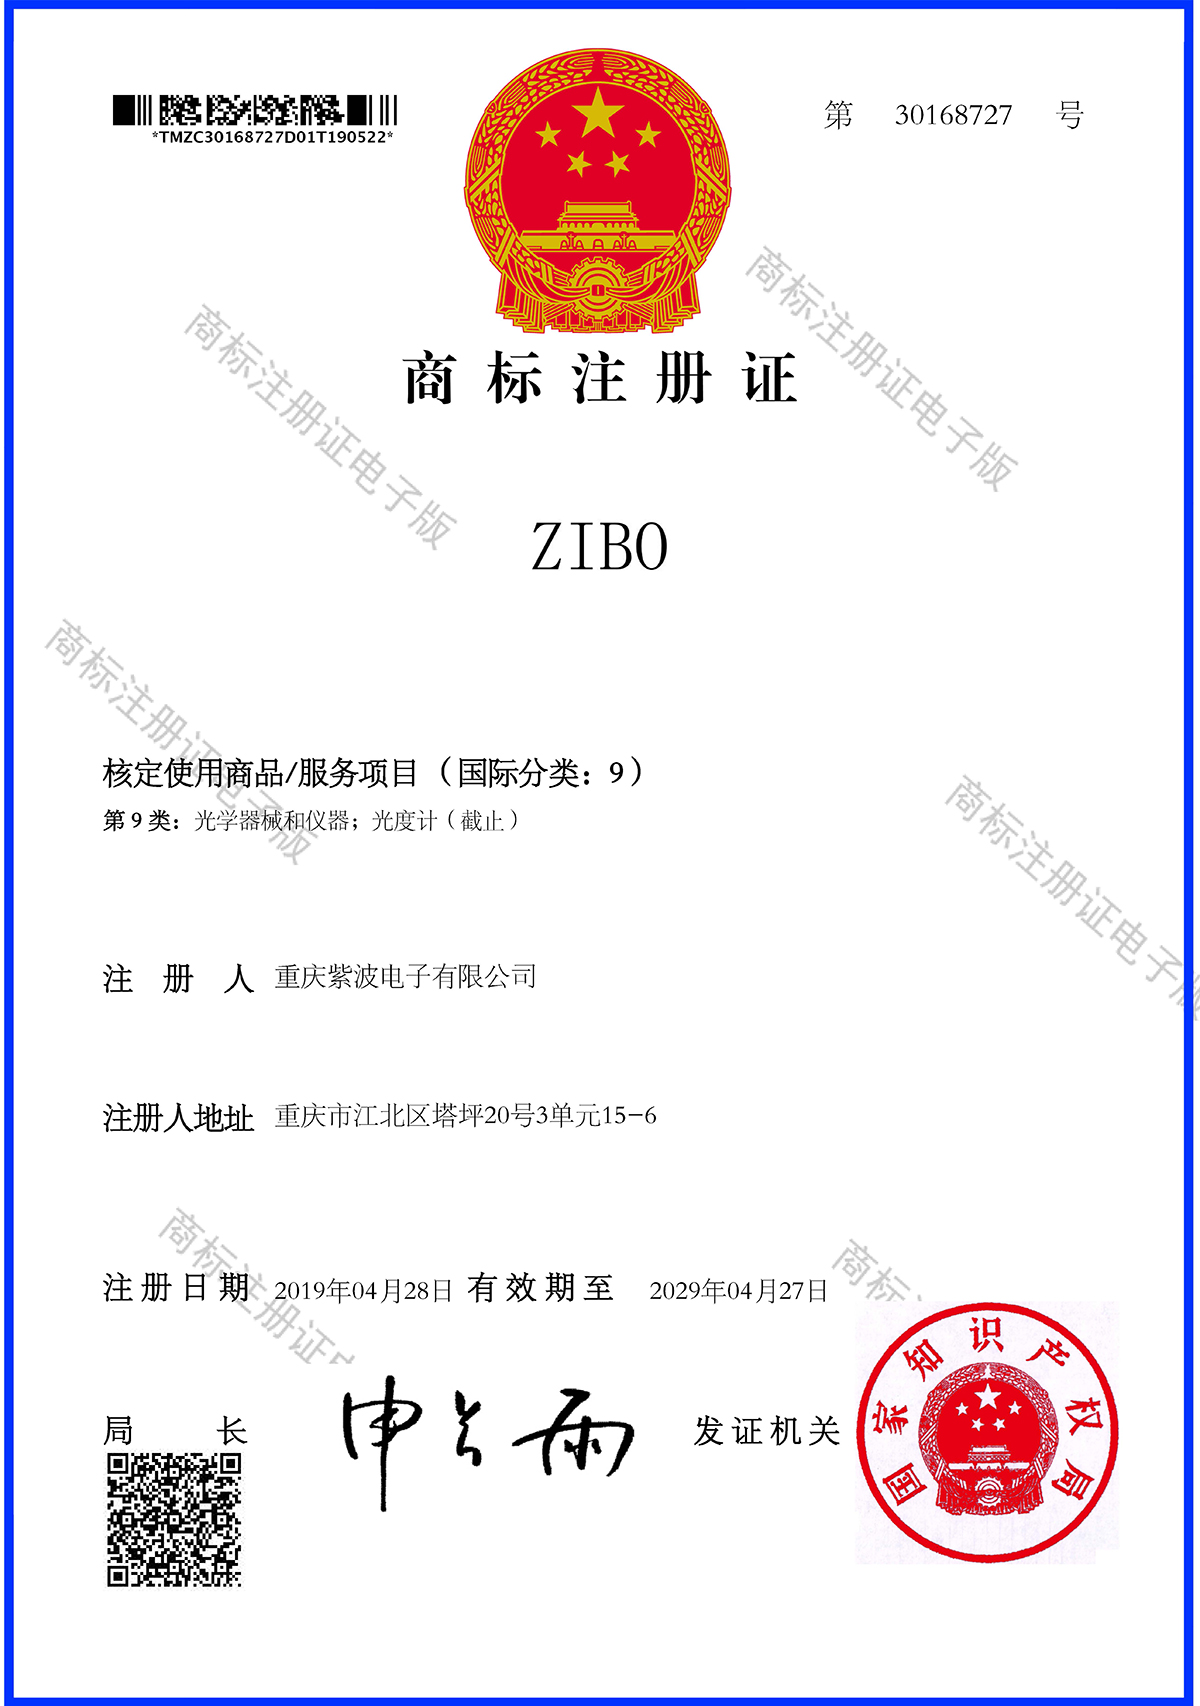 商标注册证_30168727_ZIBO第9类_1200.jpg